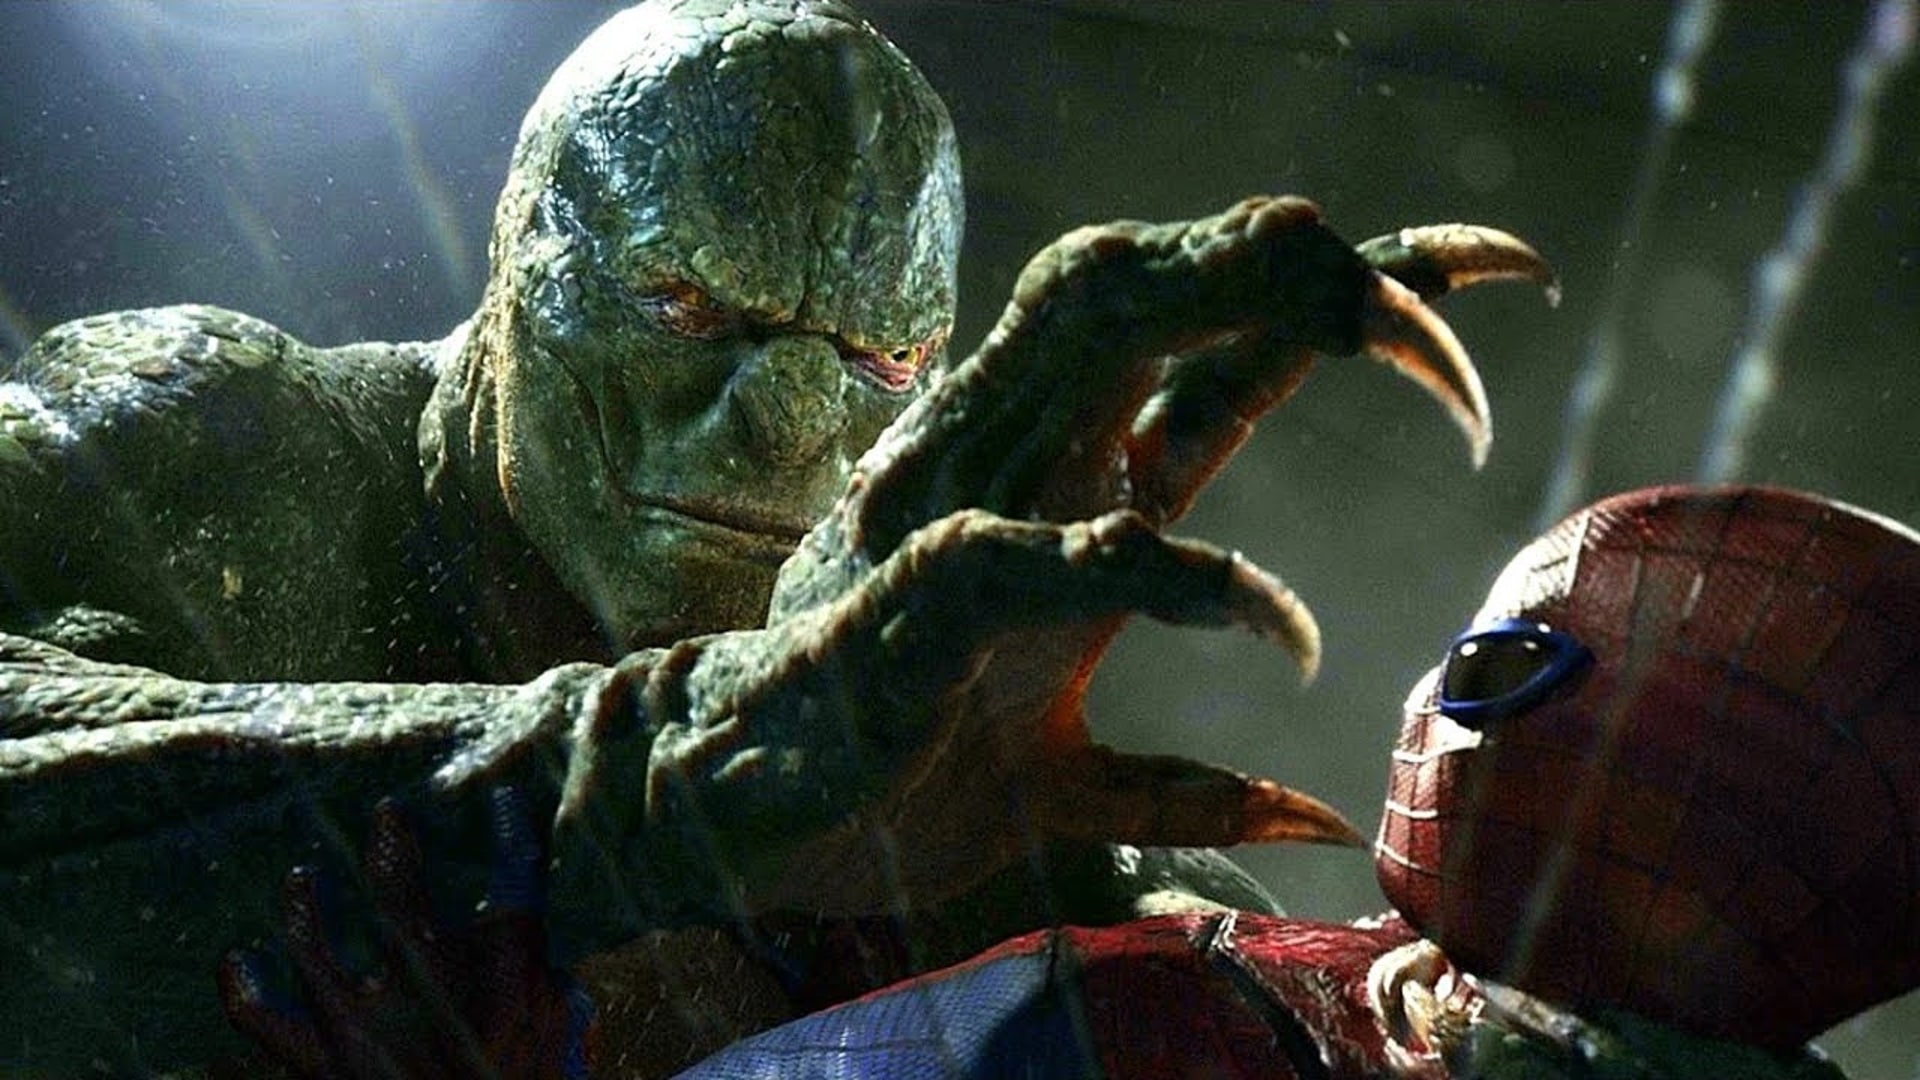 Spider Man 3 Teaser Reveals New Lizard Fight